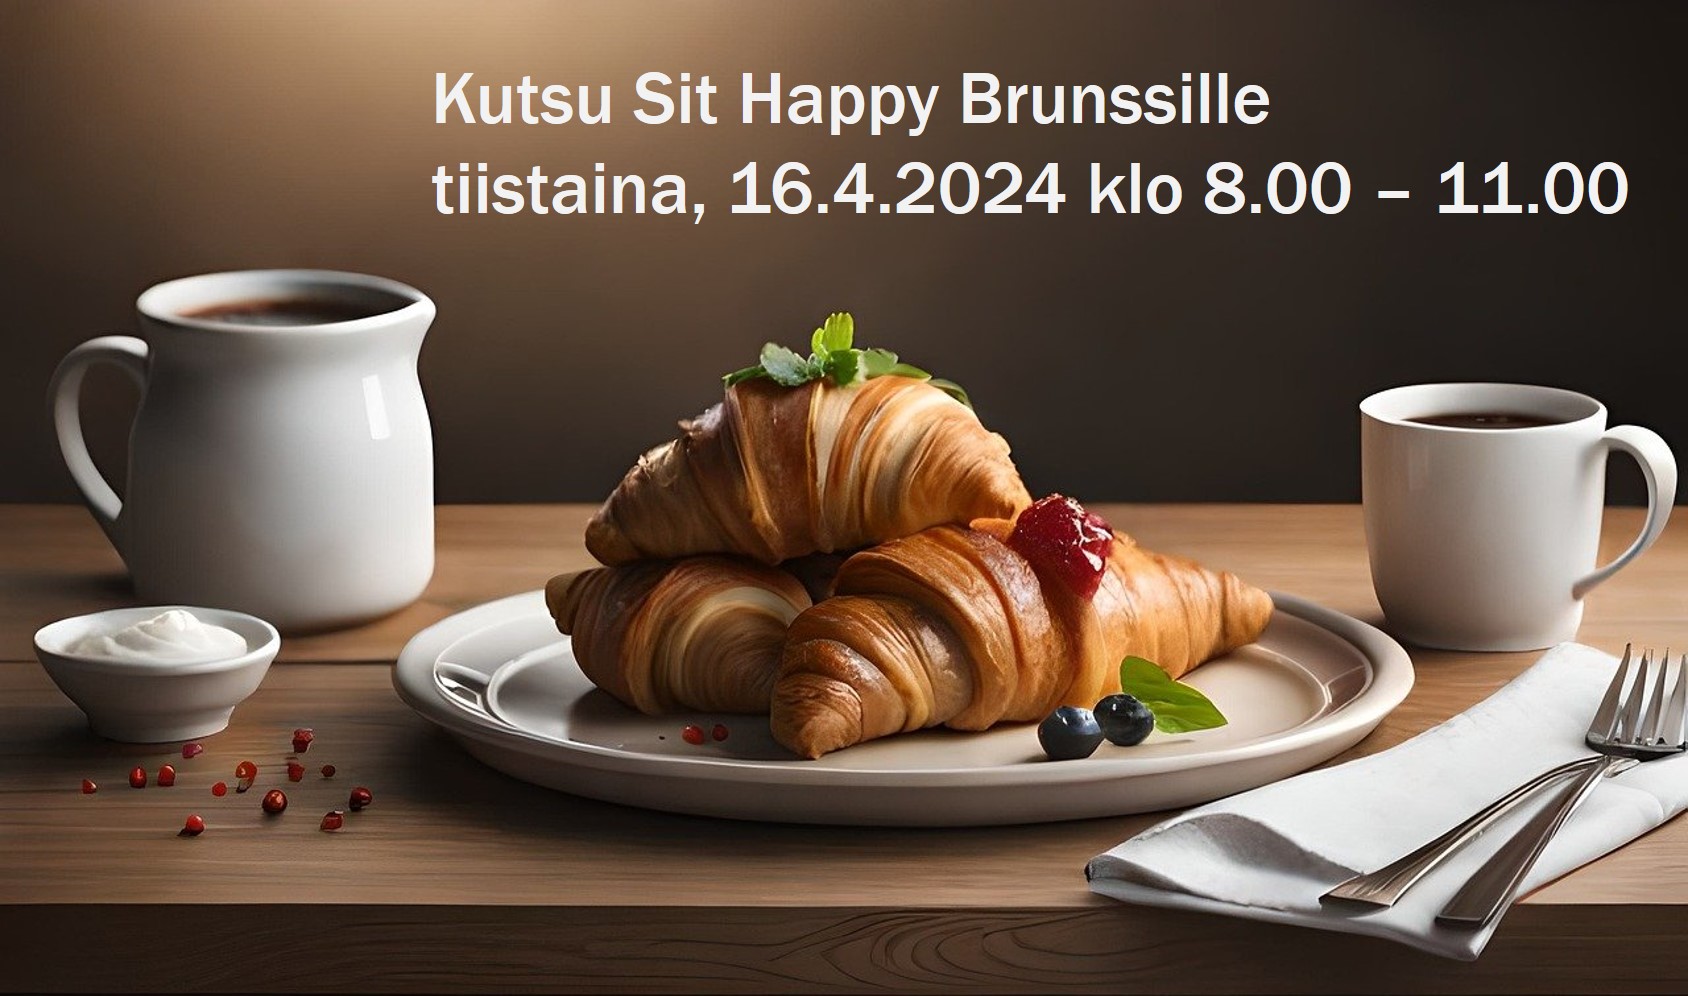 Kutsu Sit Happy brunssille Oulun Yrityskalustoon.